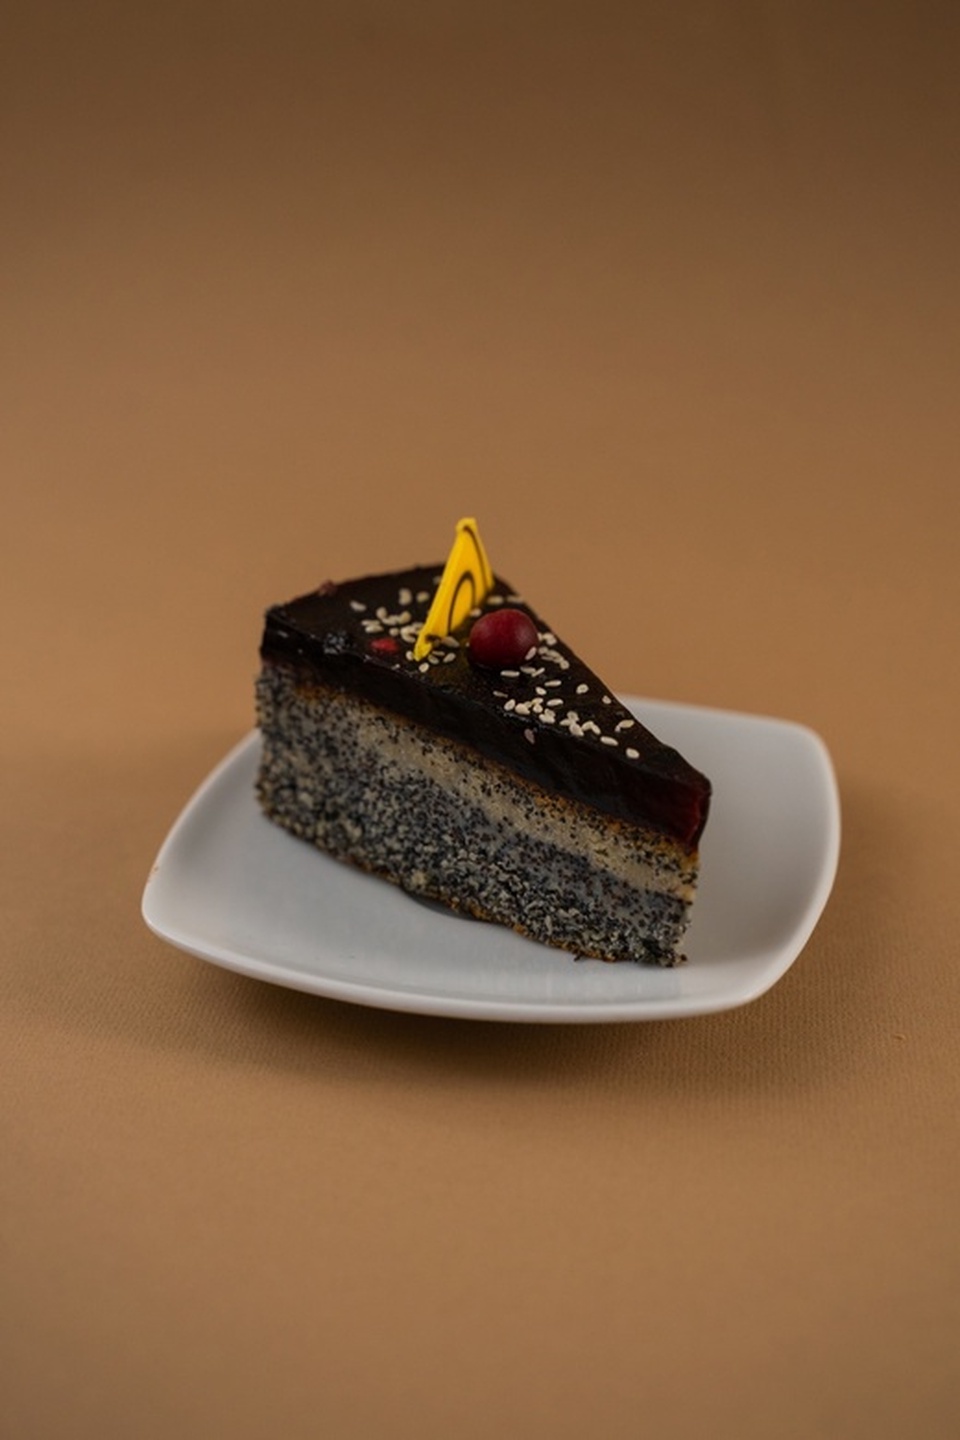 Пирожное "Маково-черничное" - 160 ₽, заказать онлайн.